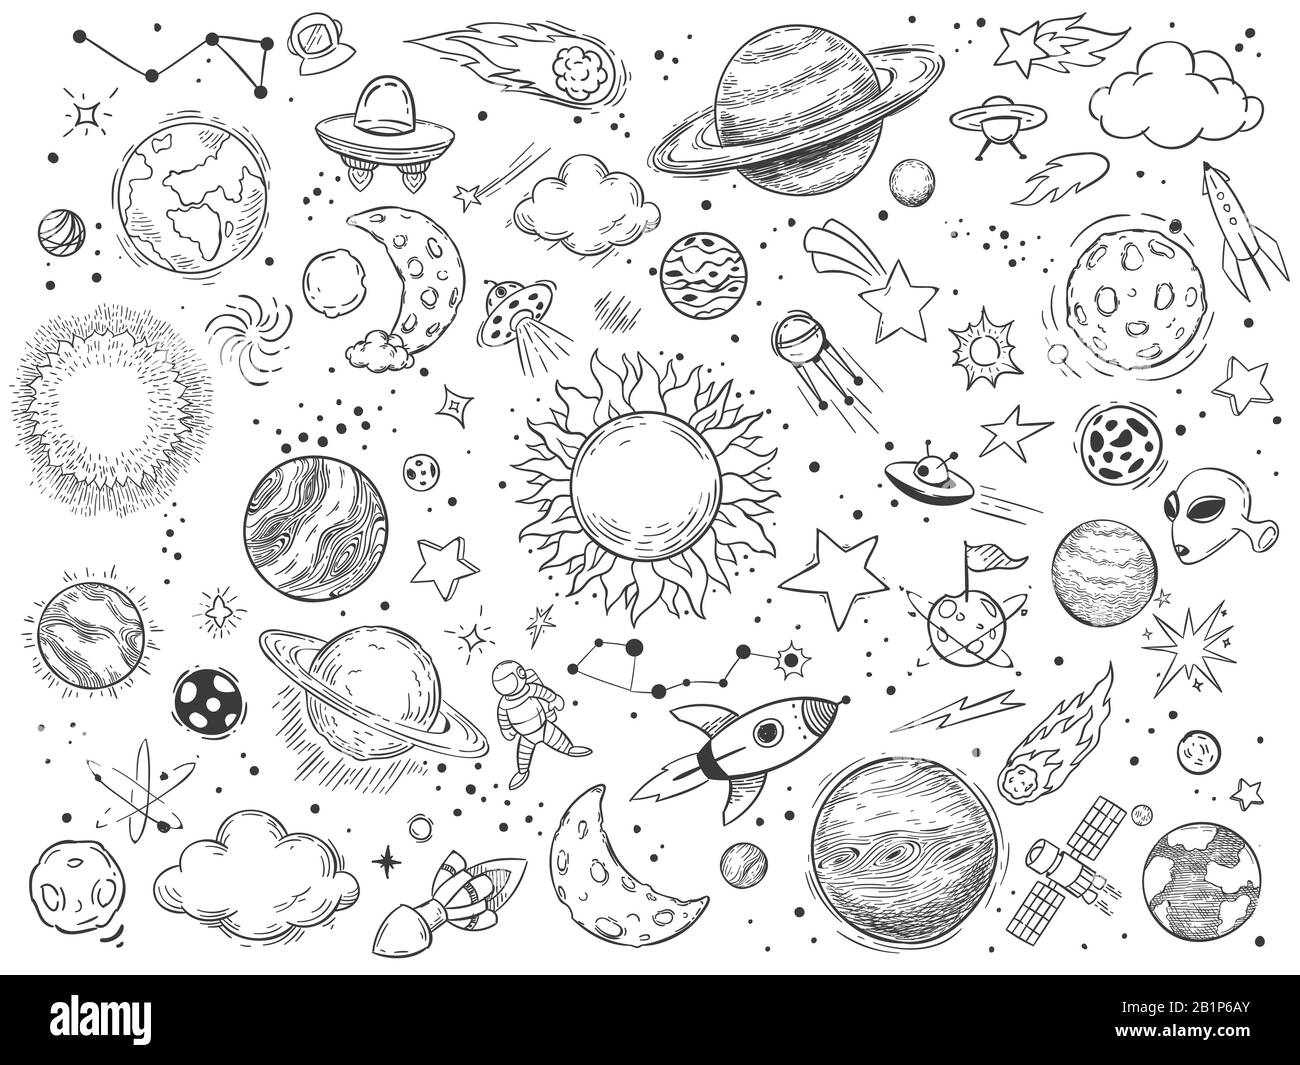 Gribouille d'espace. Les caniches d'astrologie, les planètes de l'univers de l'espace d'esquisse et l'illustration vectorielle cosmique dessinée à la main. Corps célestes noir et blanc Illustration de Vecteur